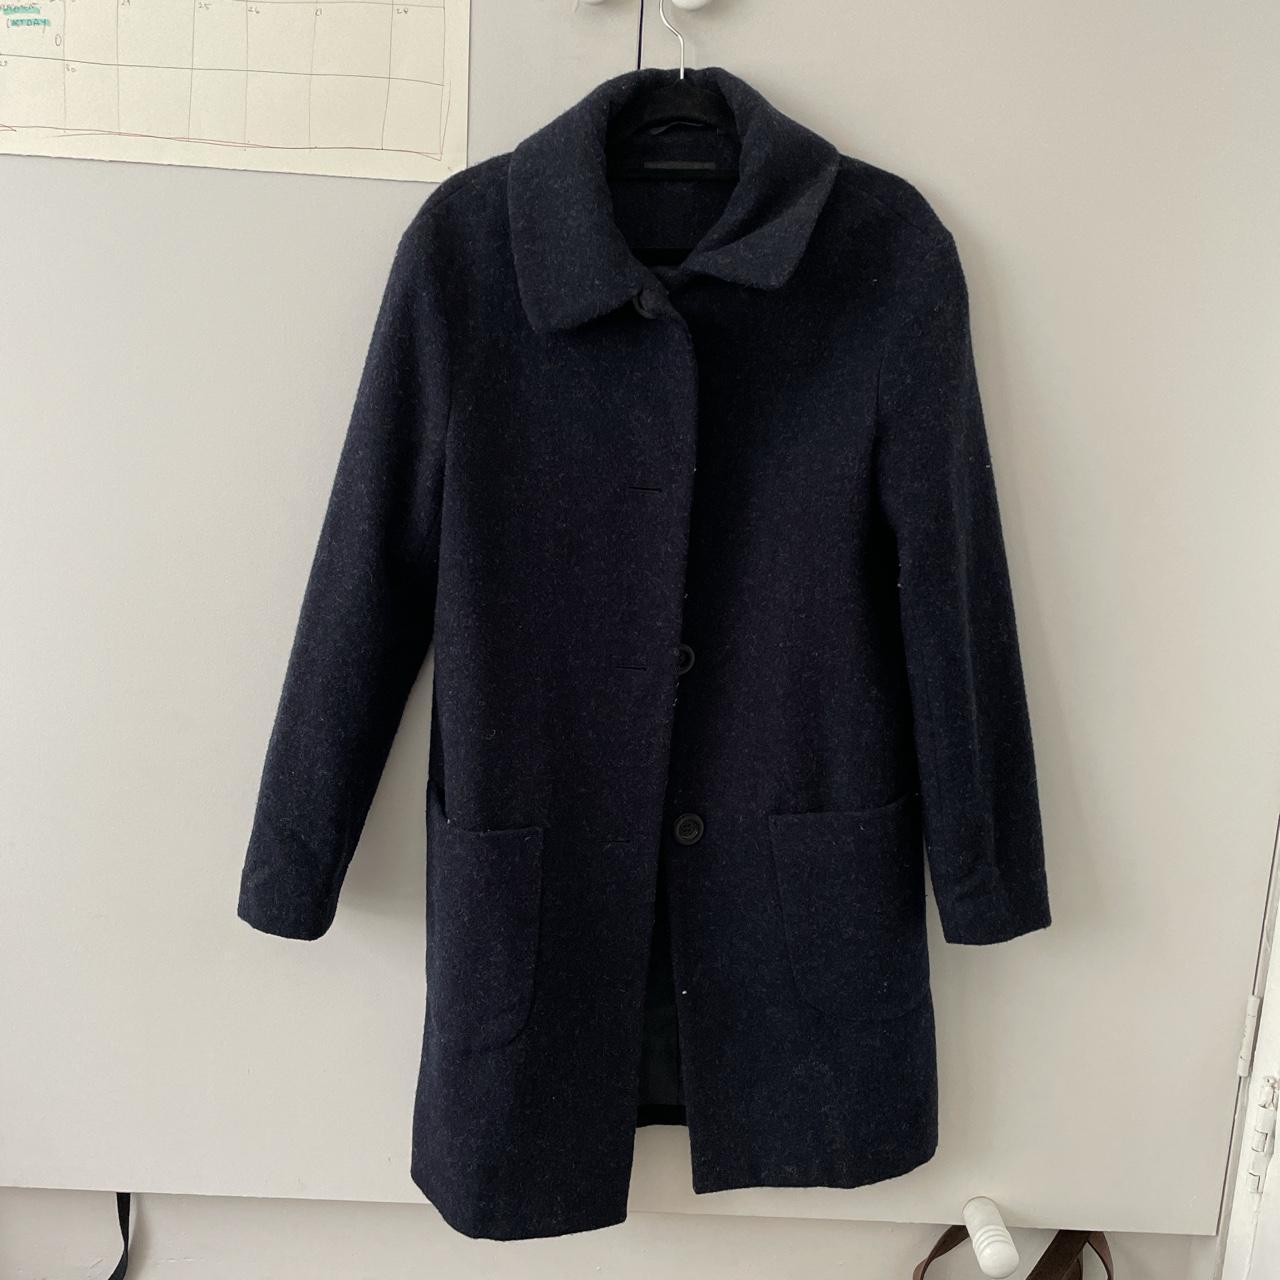 Uniqlo winter wool coat Navy blue Size xs - Depop